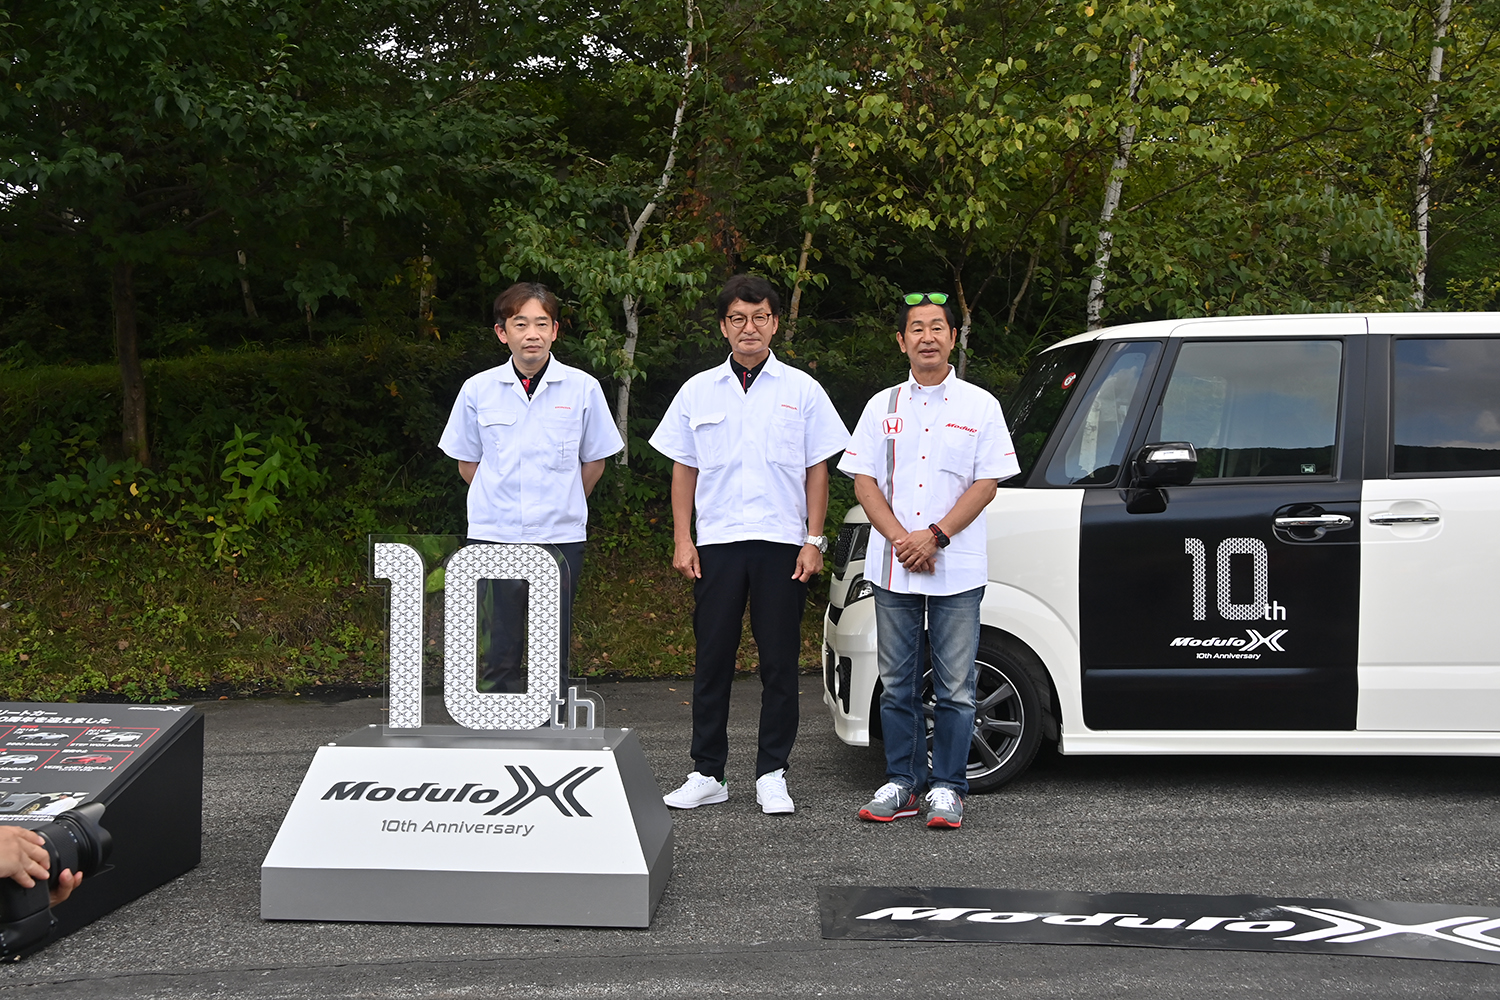 Modulo Xシリーズ10周年記念オーナーズミーティングin群サイ_会場風景